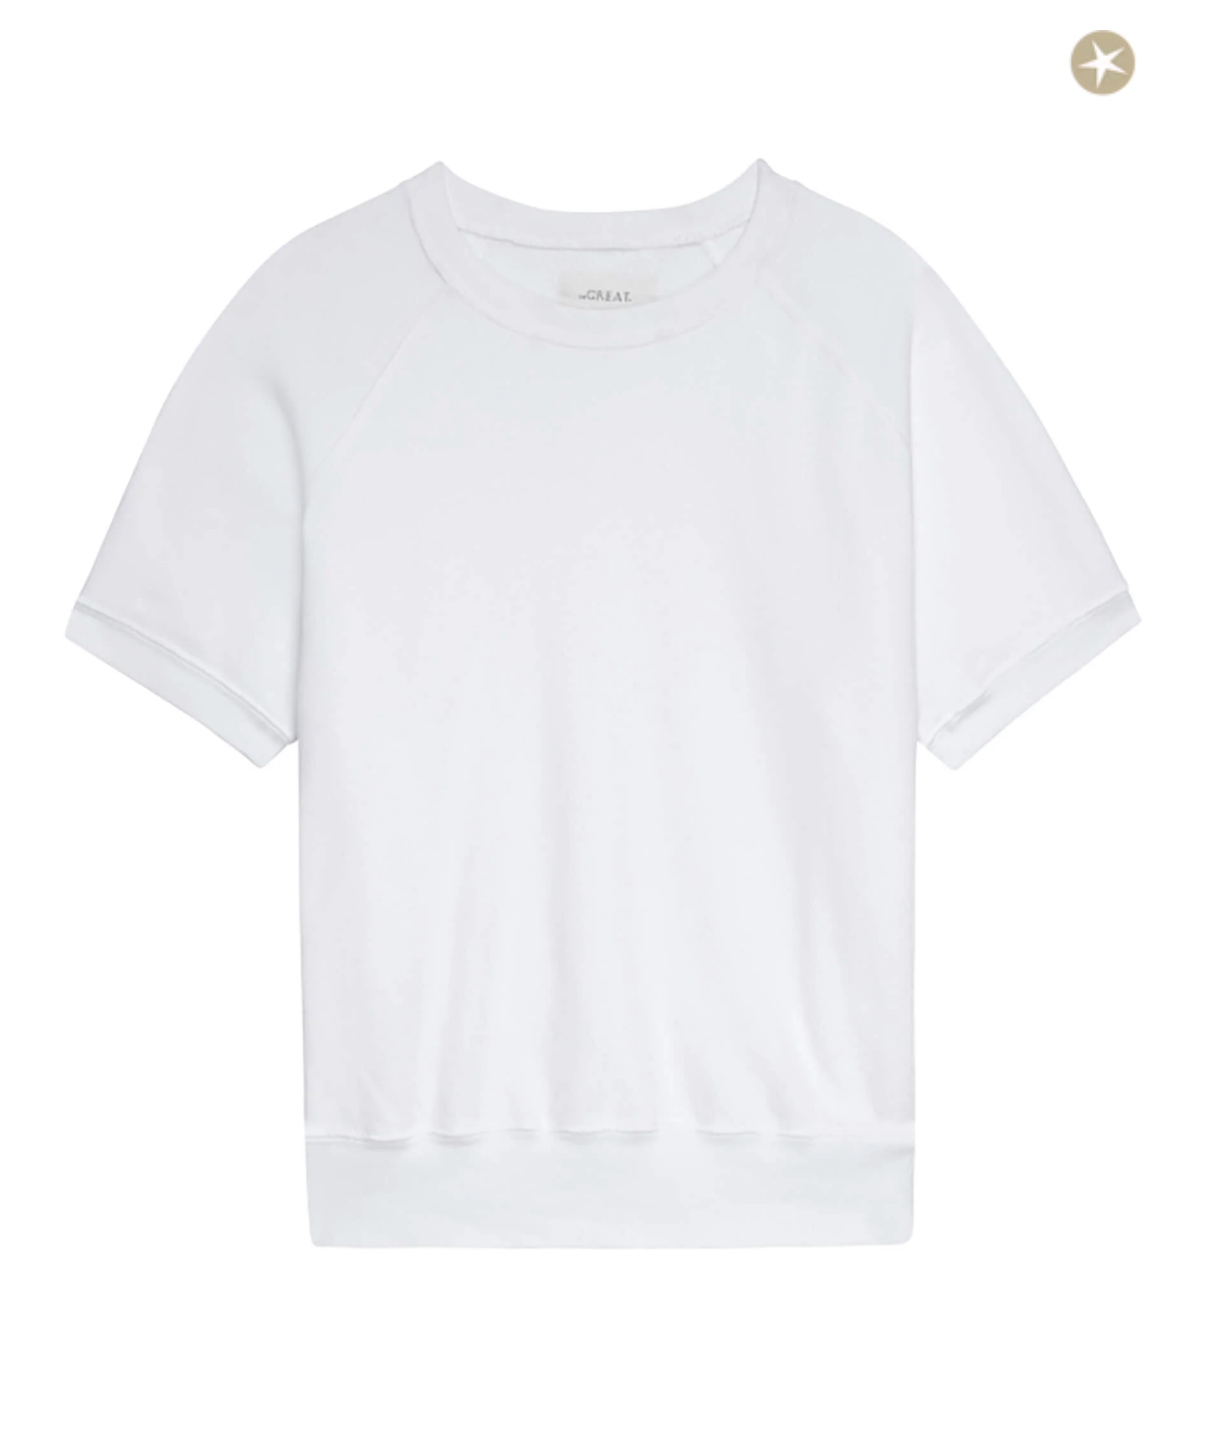 The Short Sleeve Sweatshirt. True White